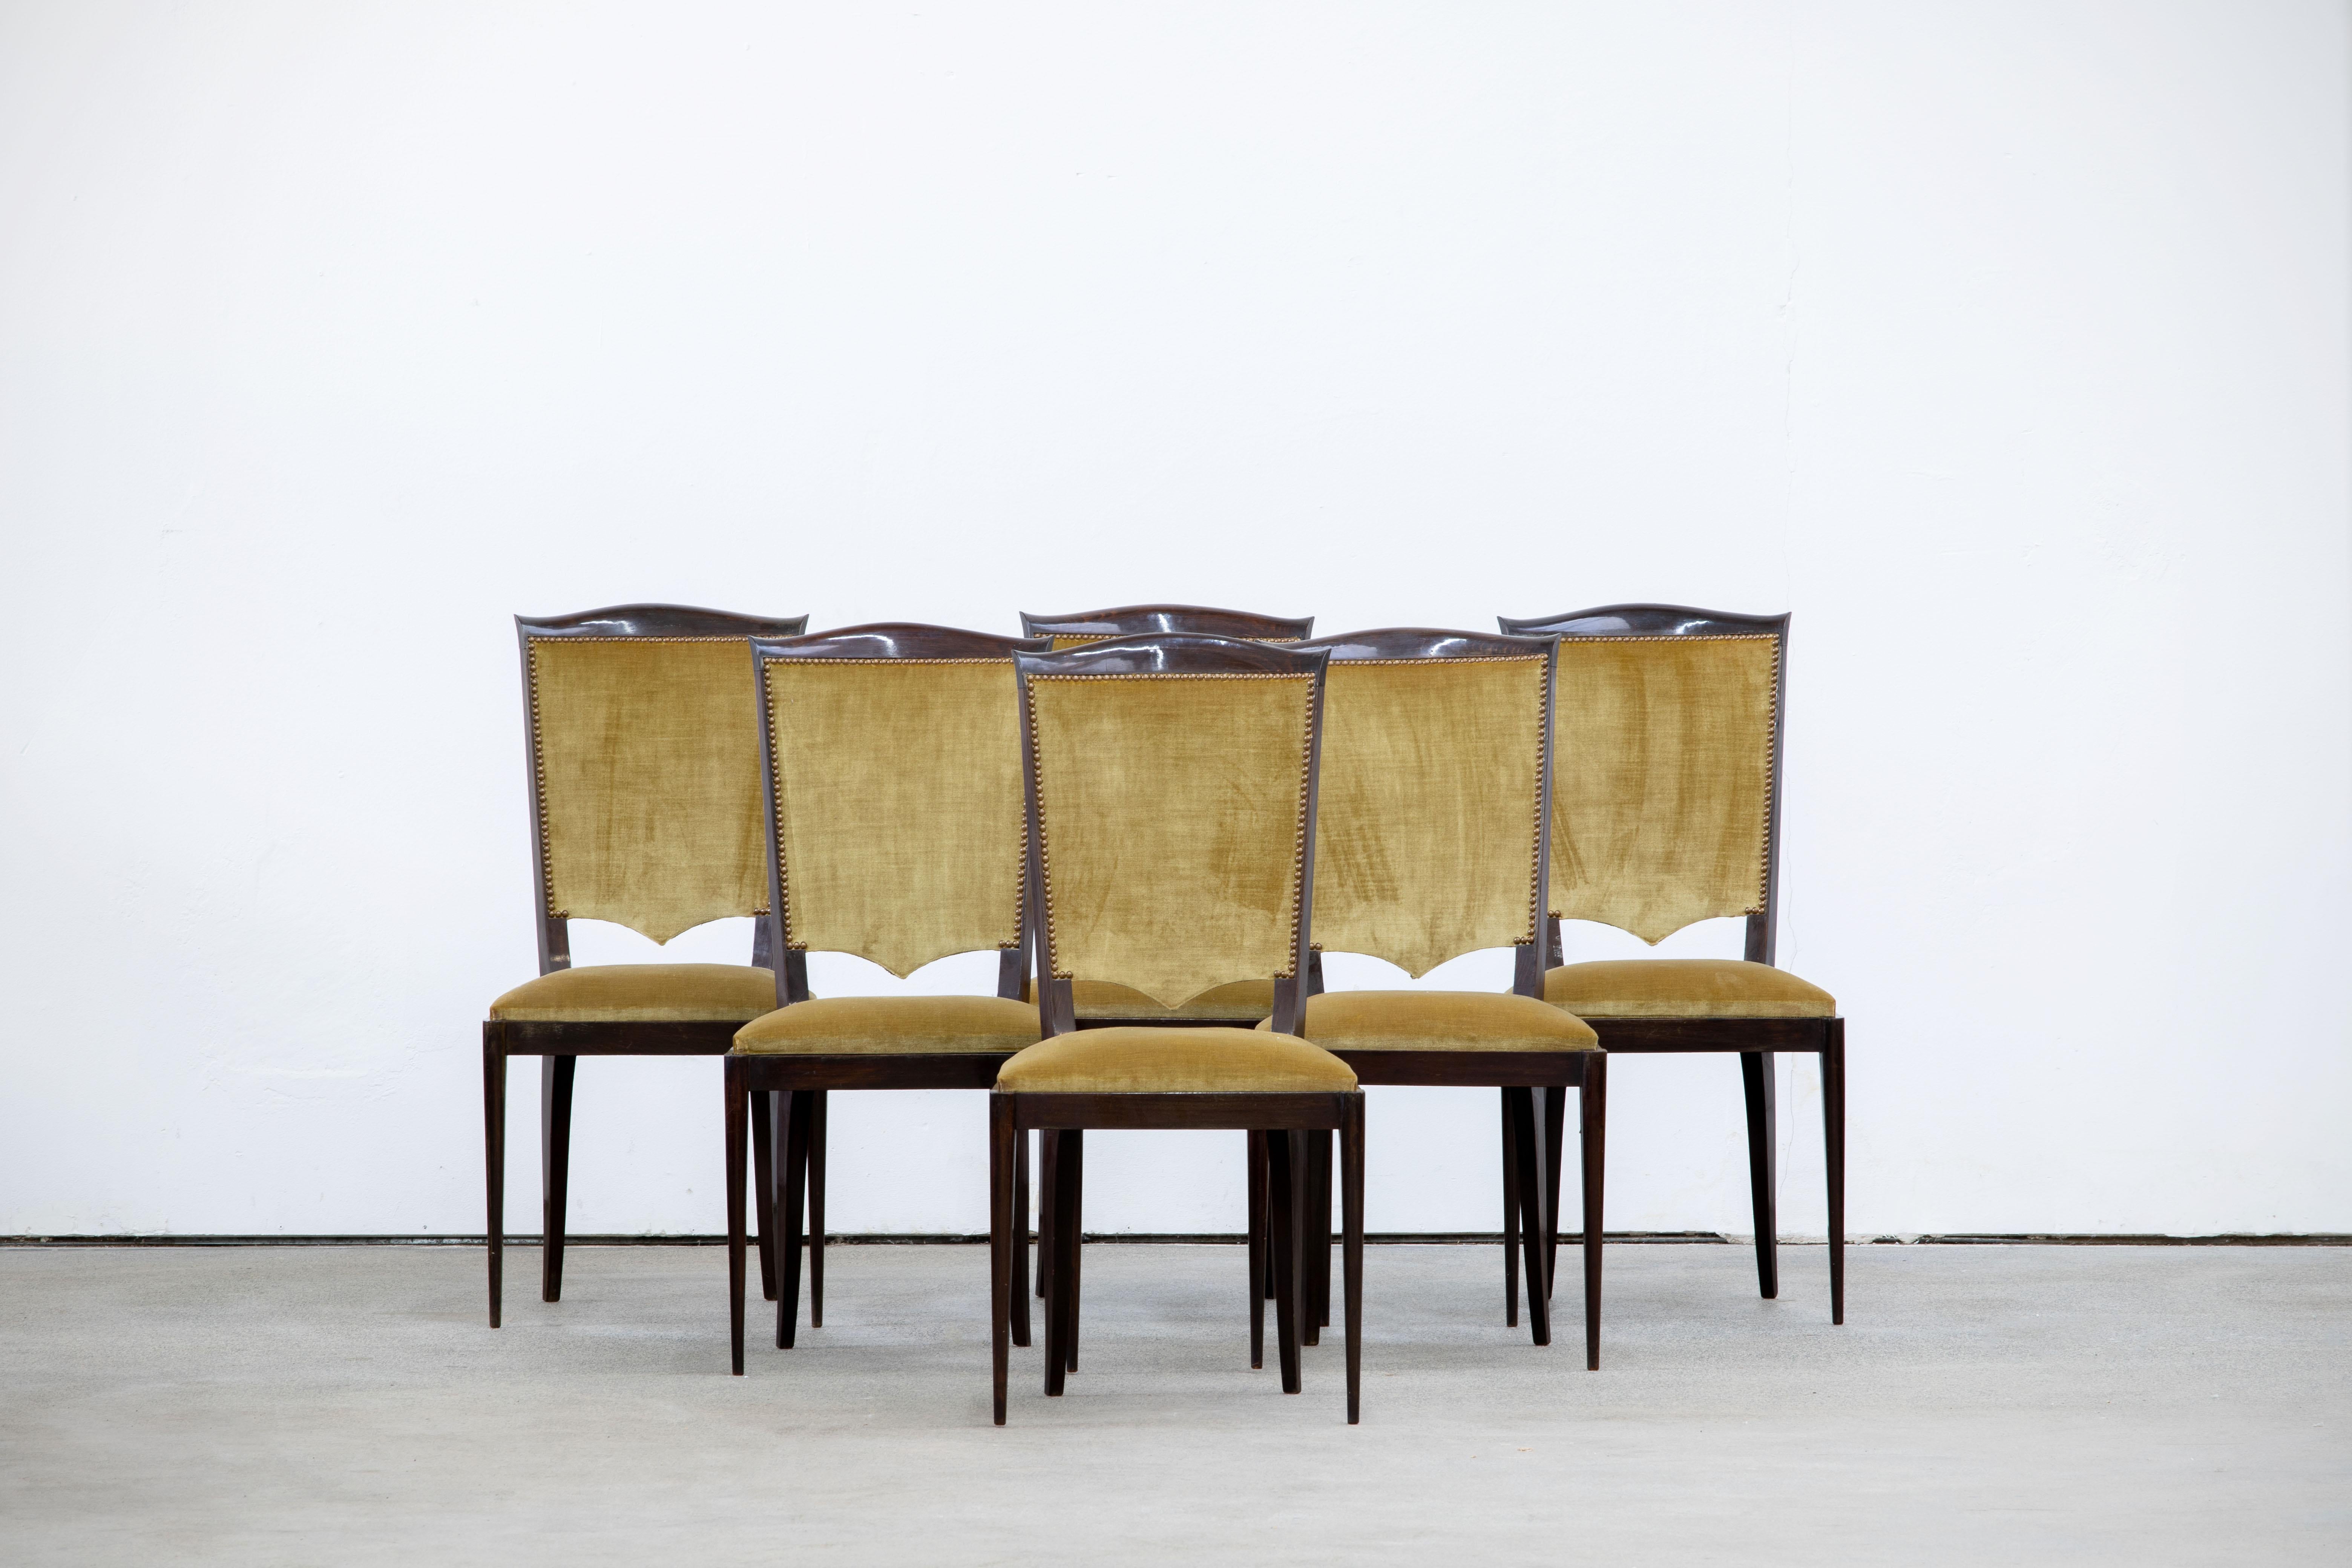 Ensemble de six chaises à haut dossier recouvertes de velours jaune, présentant des éléments de design français traditionnels dans une finition chêne foncé. Restaurée et polie.